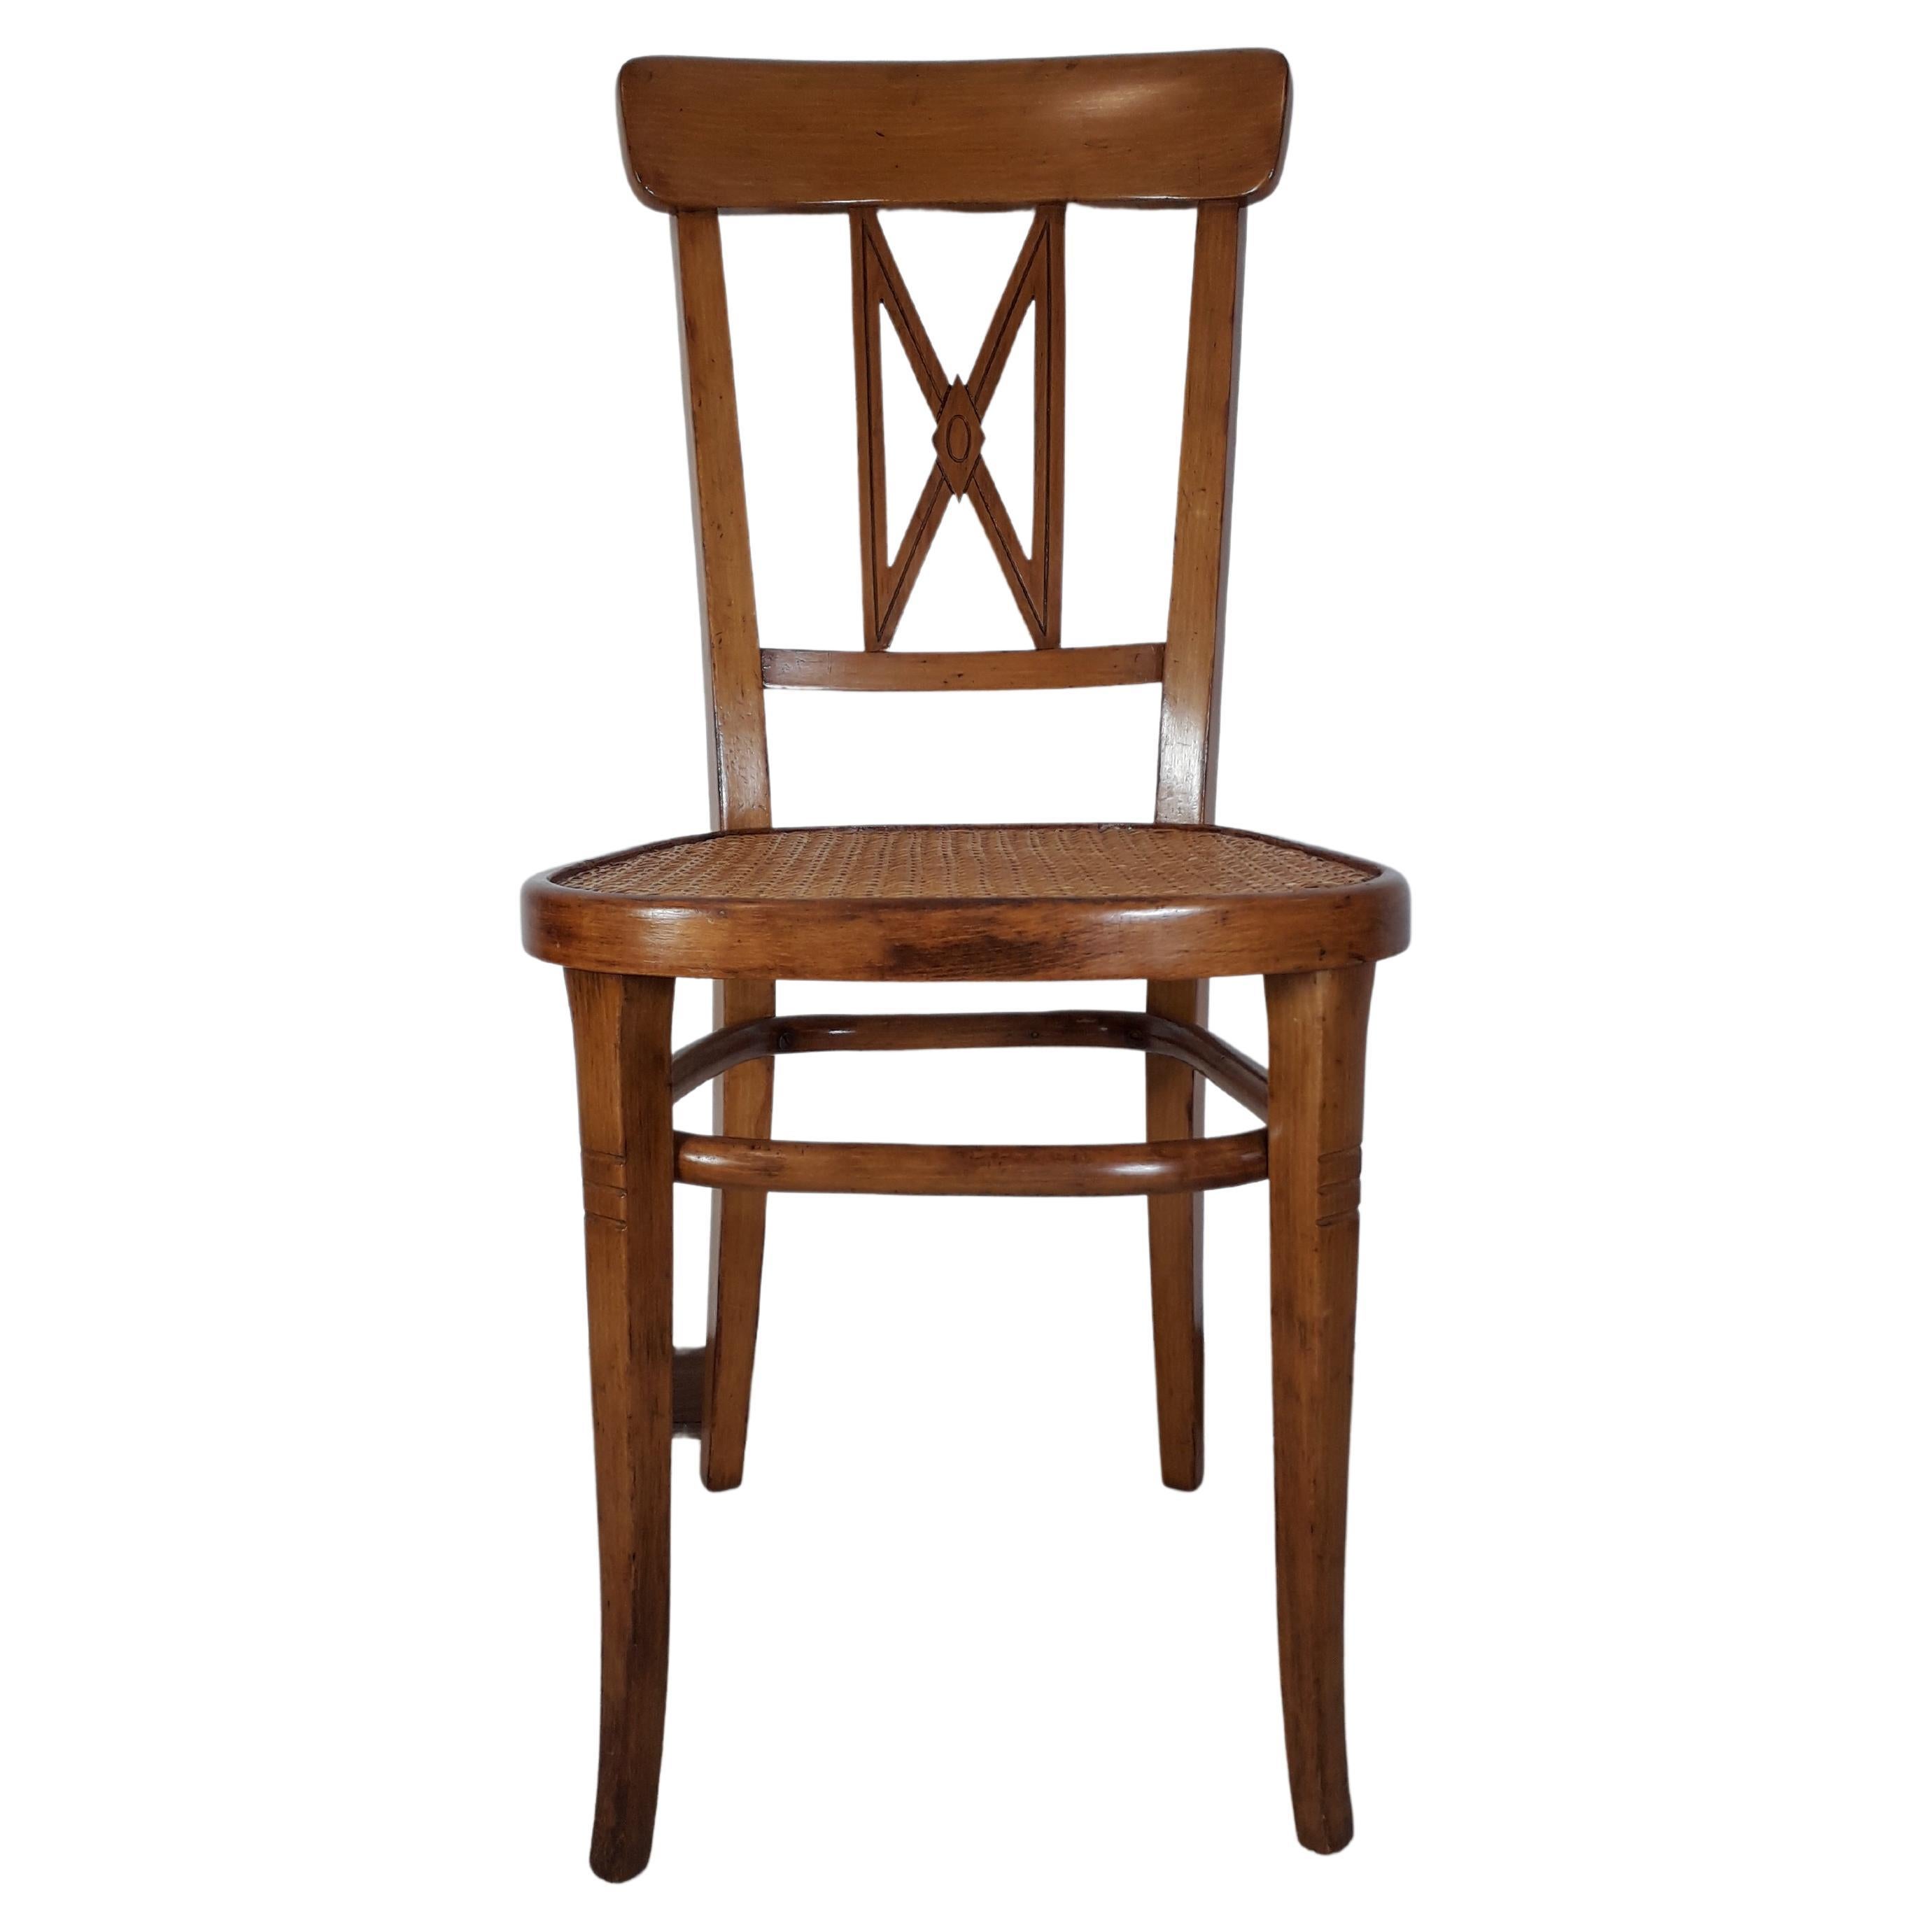 Seltener Stuhl der Wiener Werkstaette, der als Prototyp der aufeinanderfolgenden Designvarianten des Architekten gilt. Gustav Sigel. Charakteristisch sind die rechteckigen Abschnitte und die geometrischen Motive der Rückenlehne.
Dieses Modell ist in